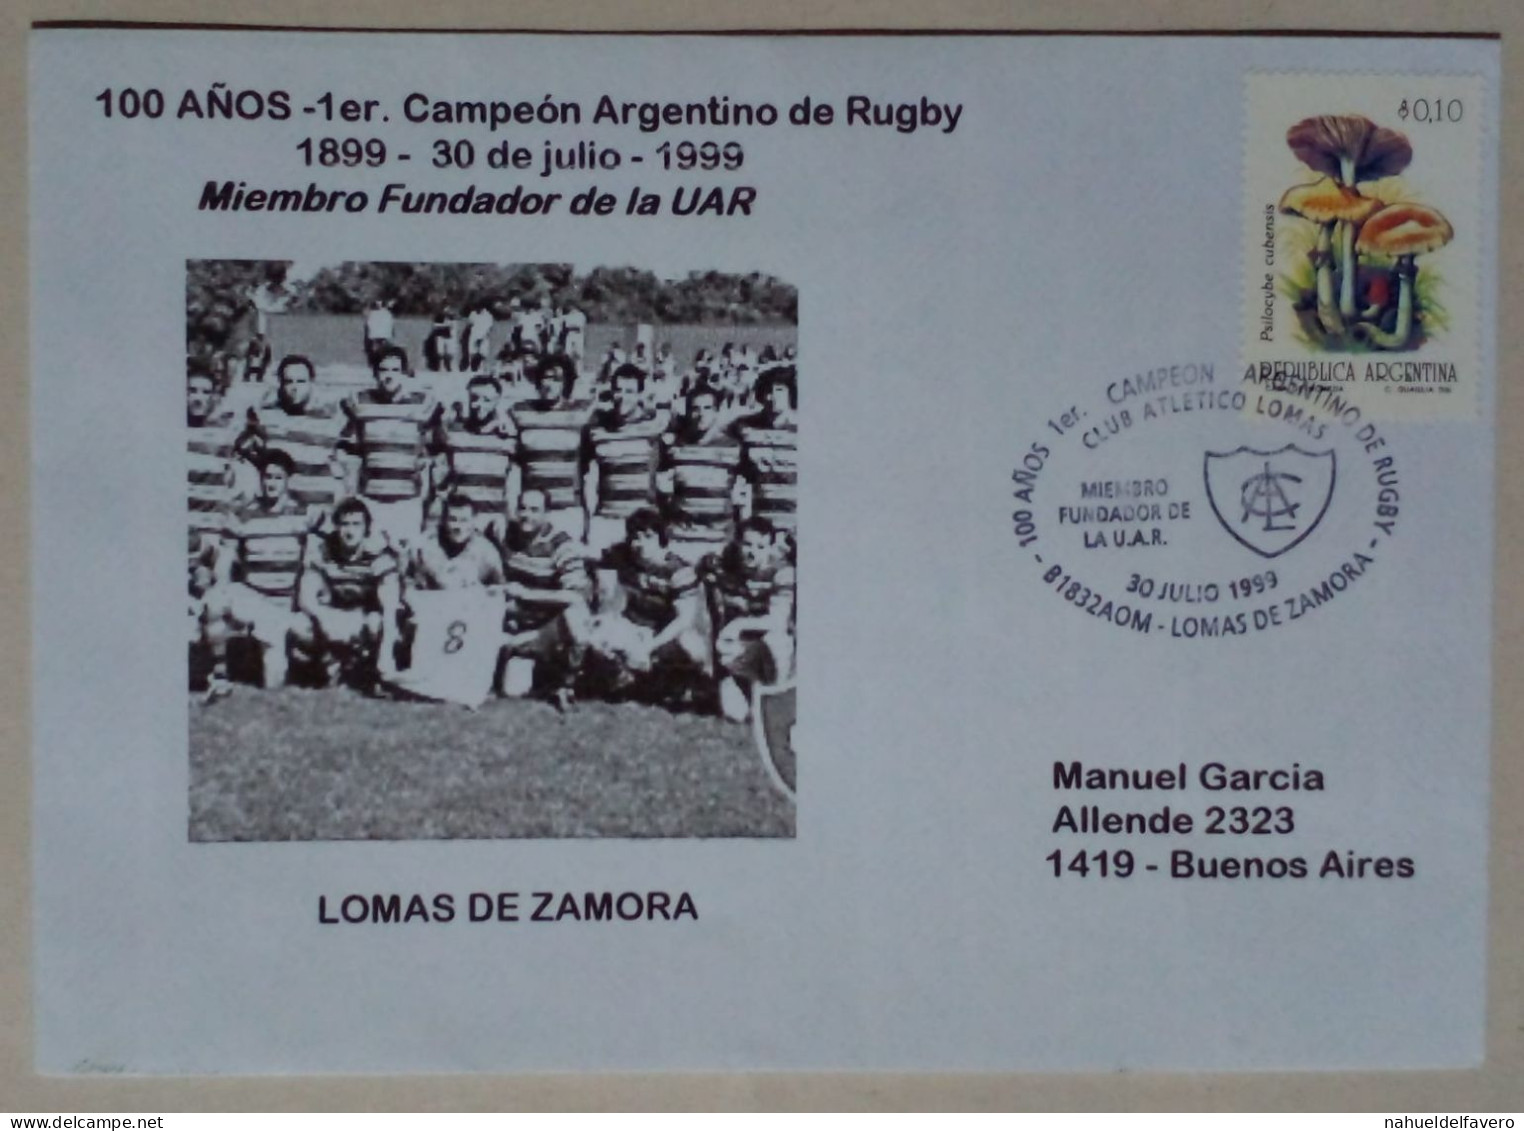 Argentine - Enveloppe Circulée Sur Le Thème Du Rugby Avec Timbre Thème Champignons (1999) - Champignons